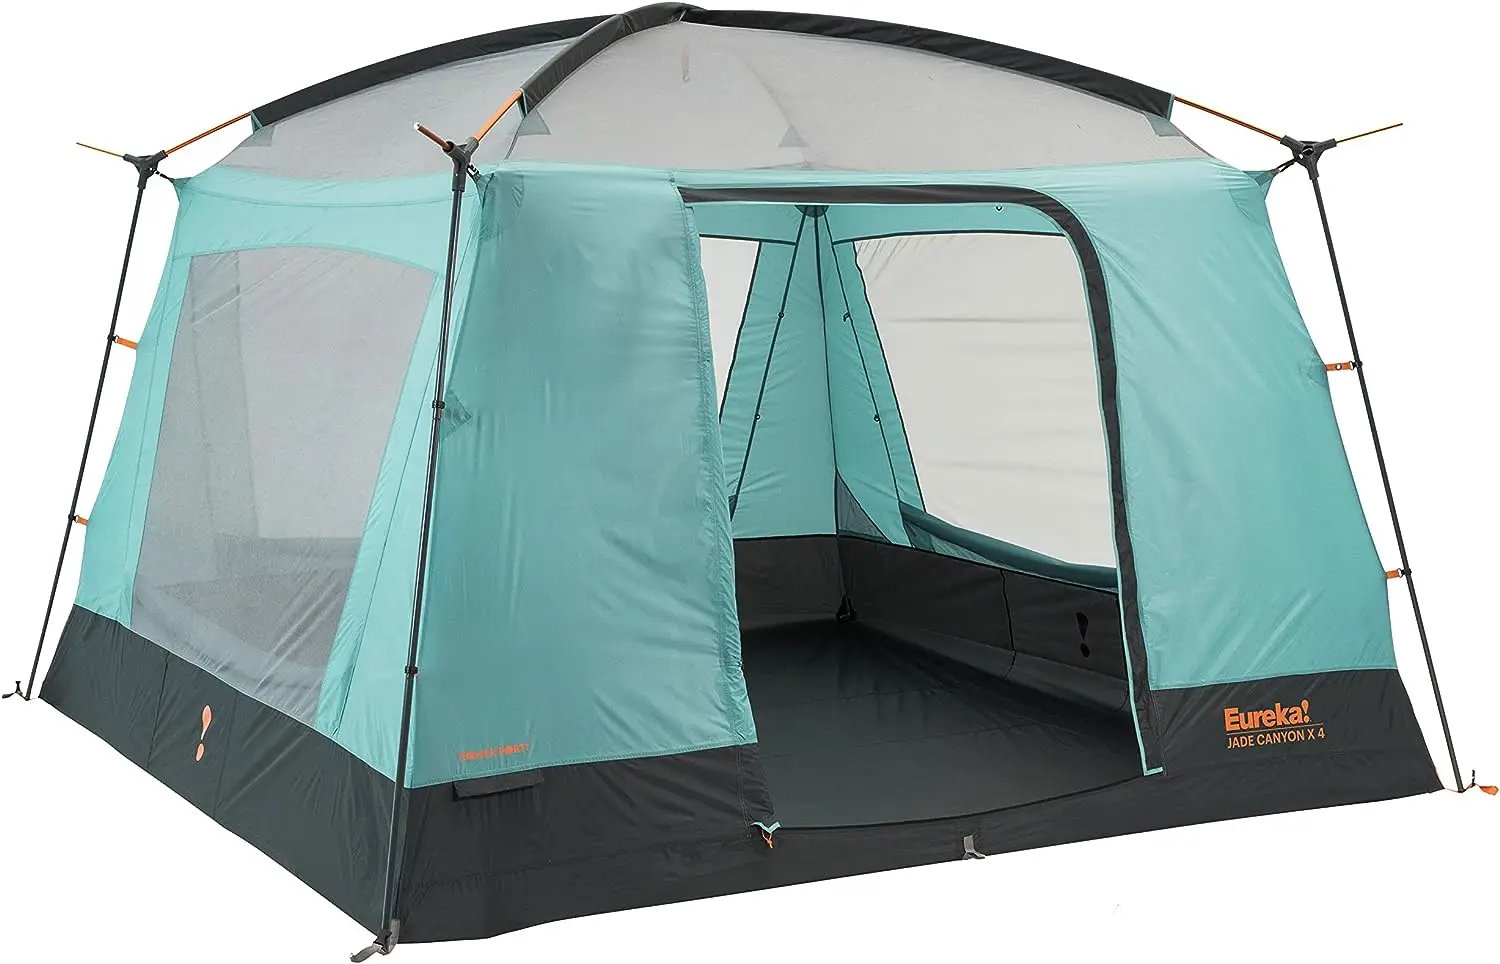 

Jade Canyon X4, 3 Season, 4 Person Camping Tent